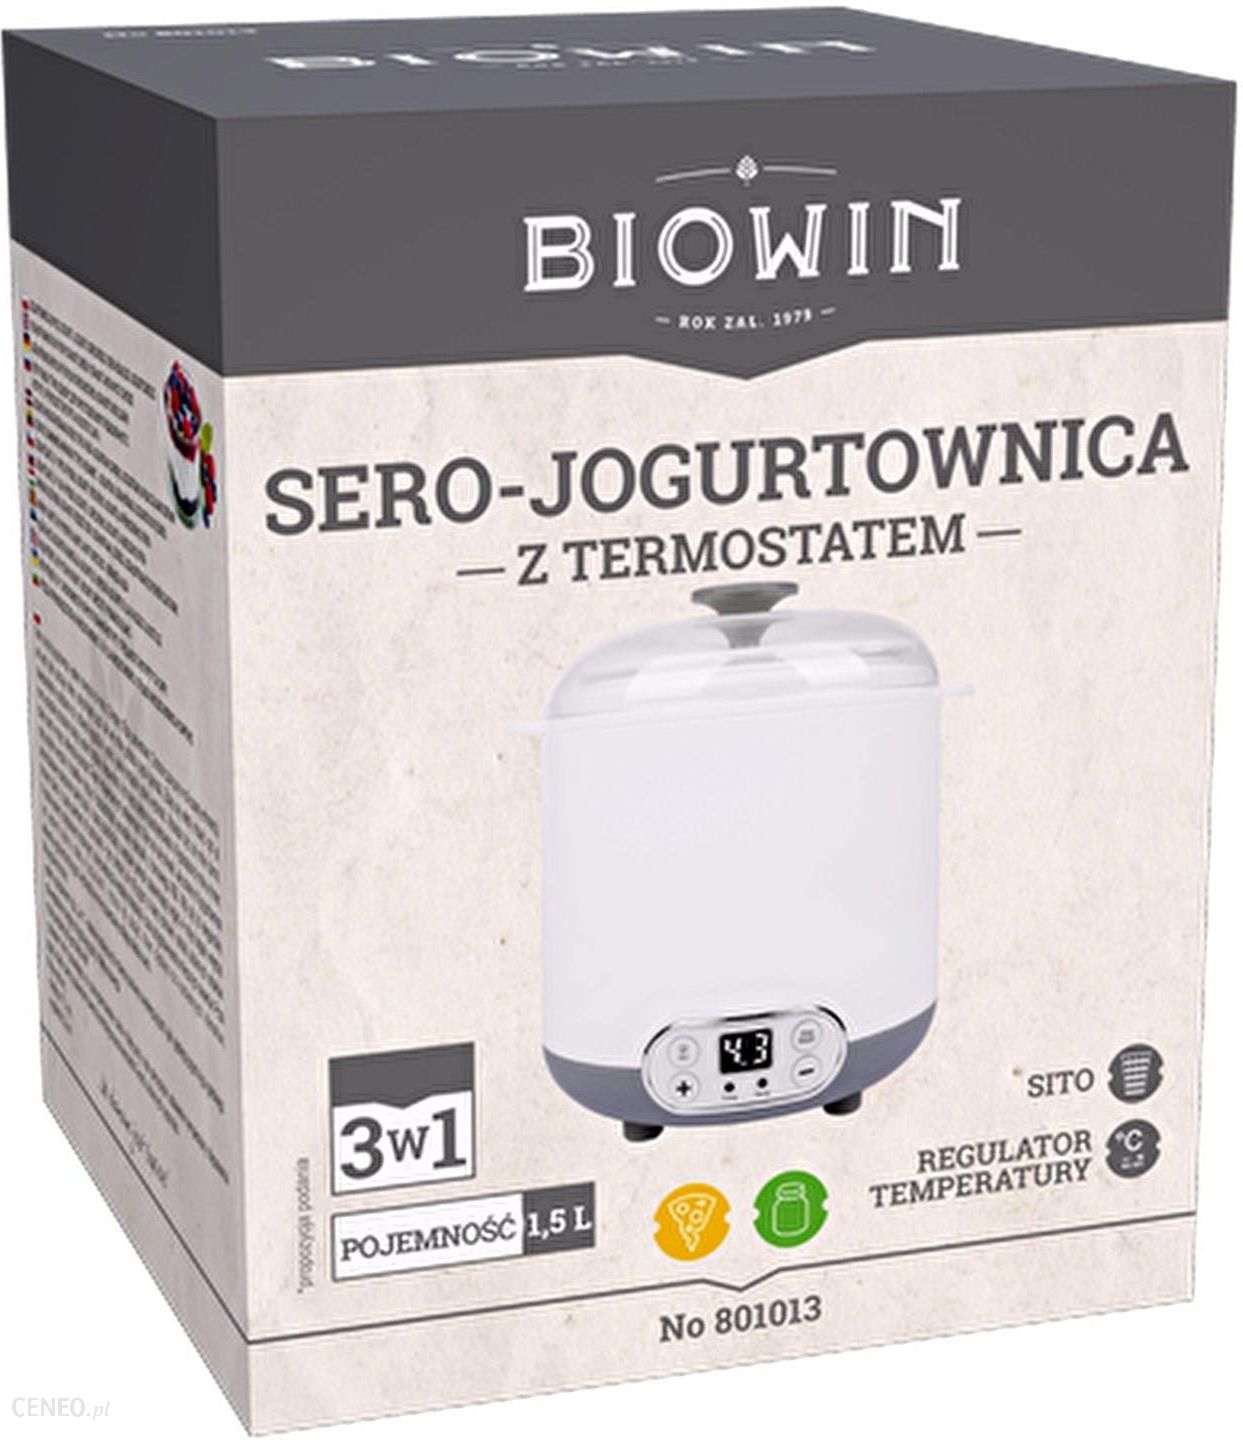 BROWIN Sero-jogurtownica z termostatem 1,5 L (801013)